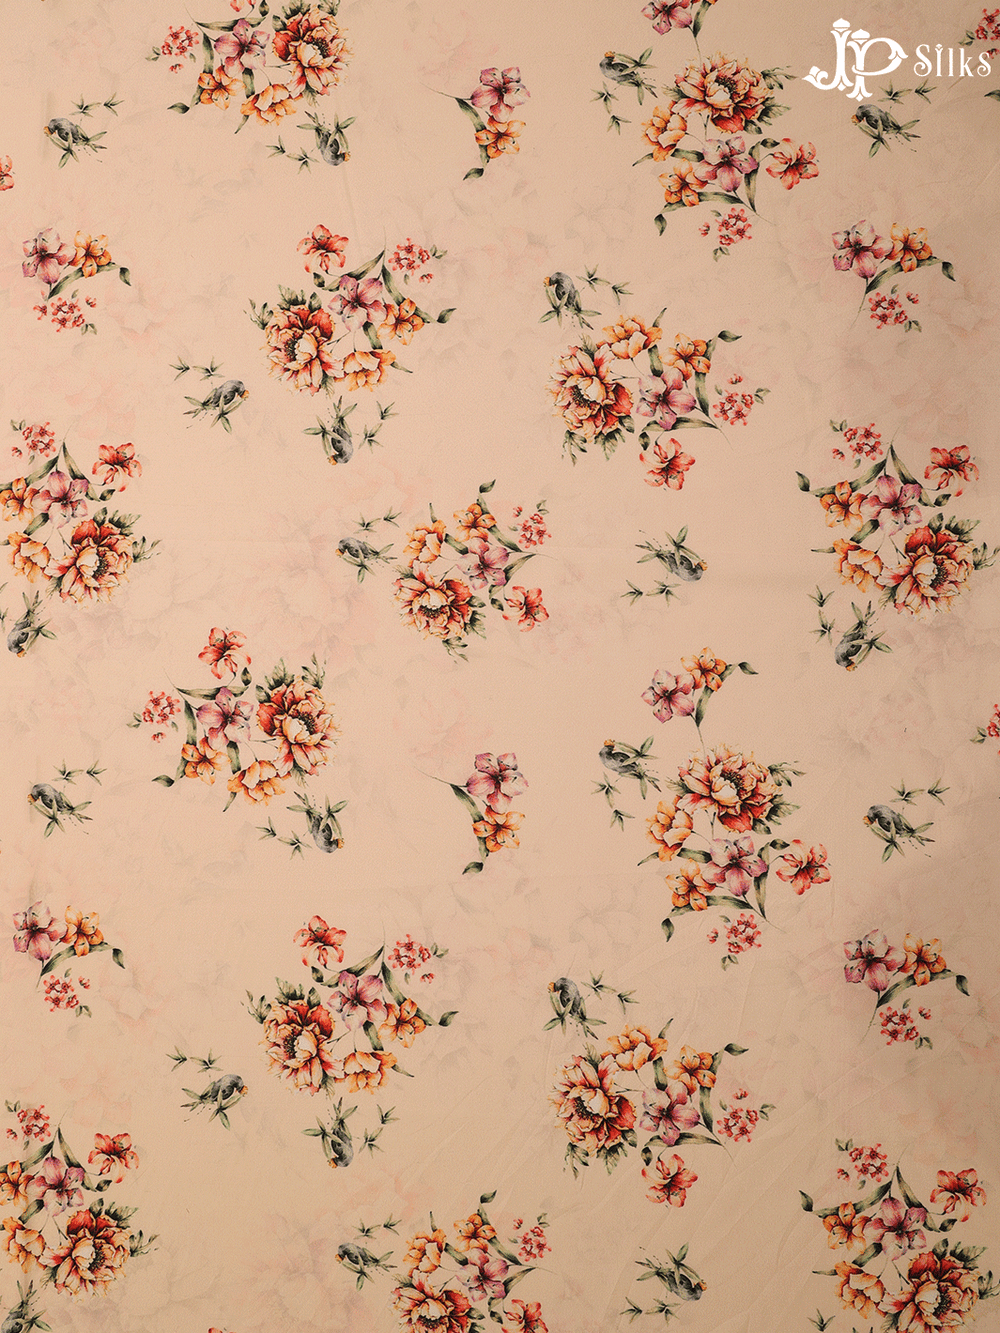 Peach Digital Printed Chiffon Fabric - A14331 - View 1